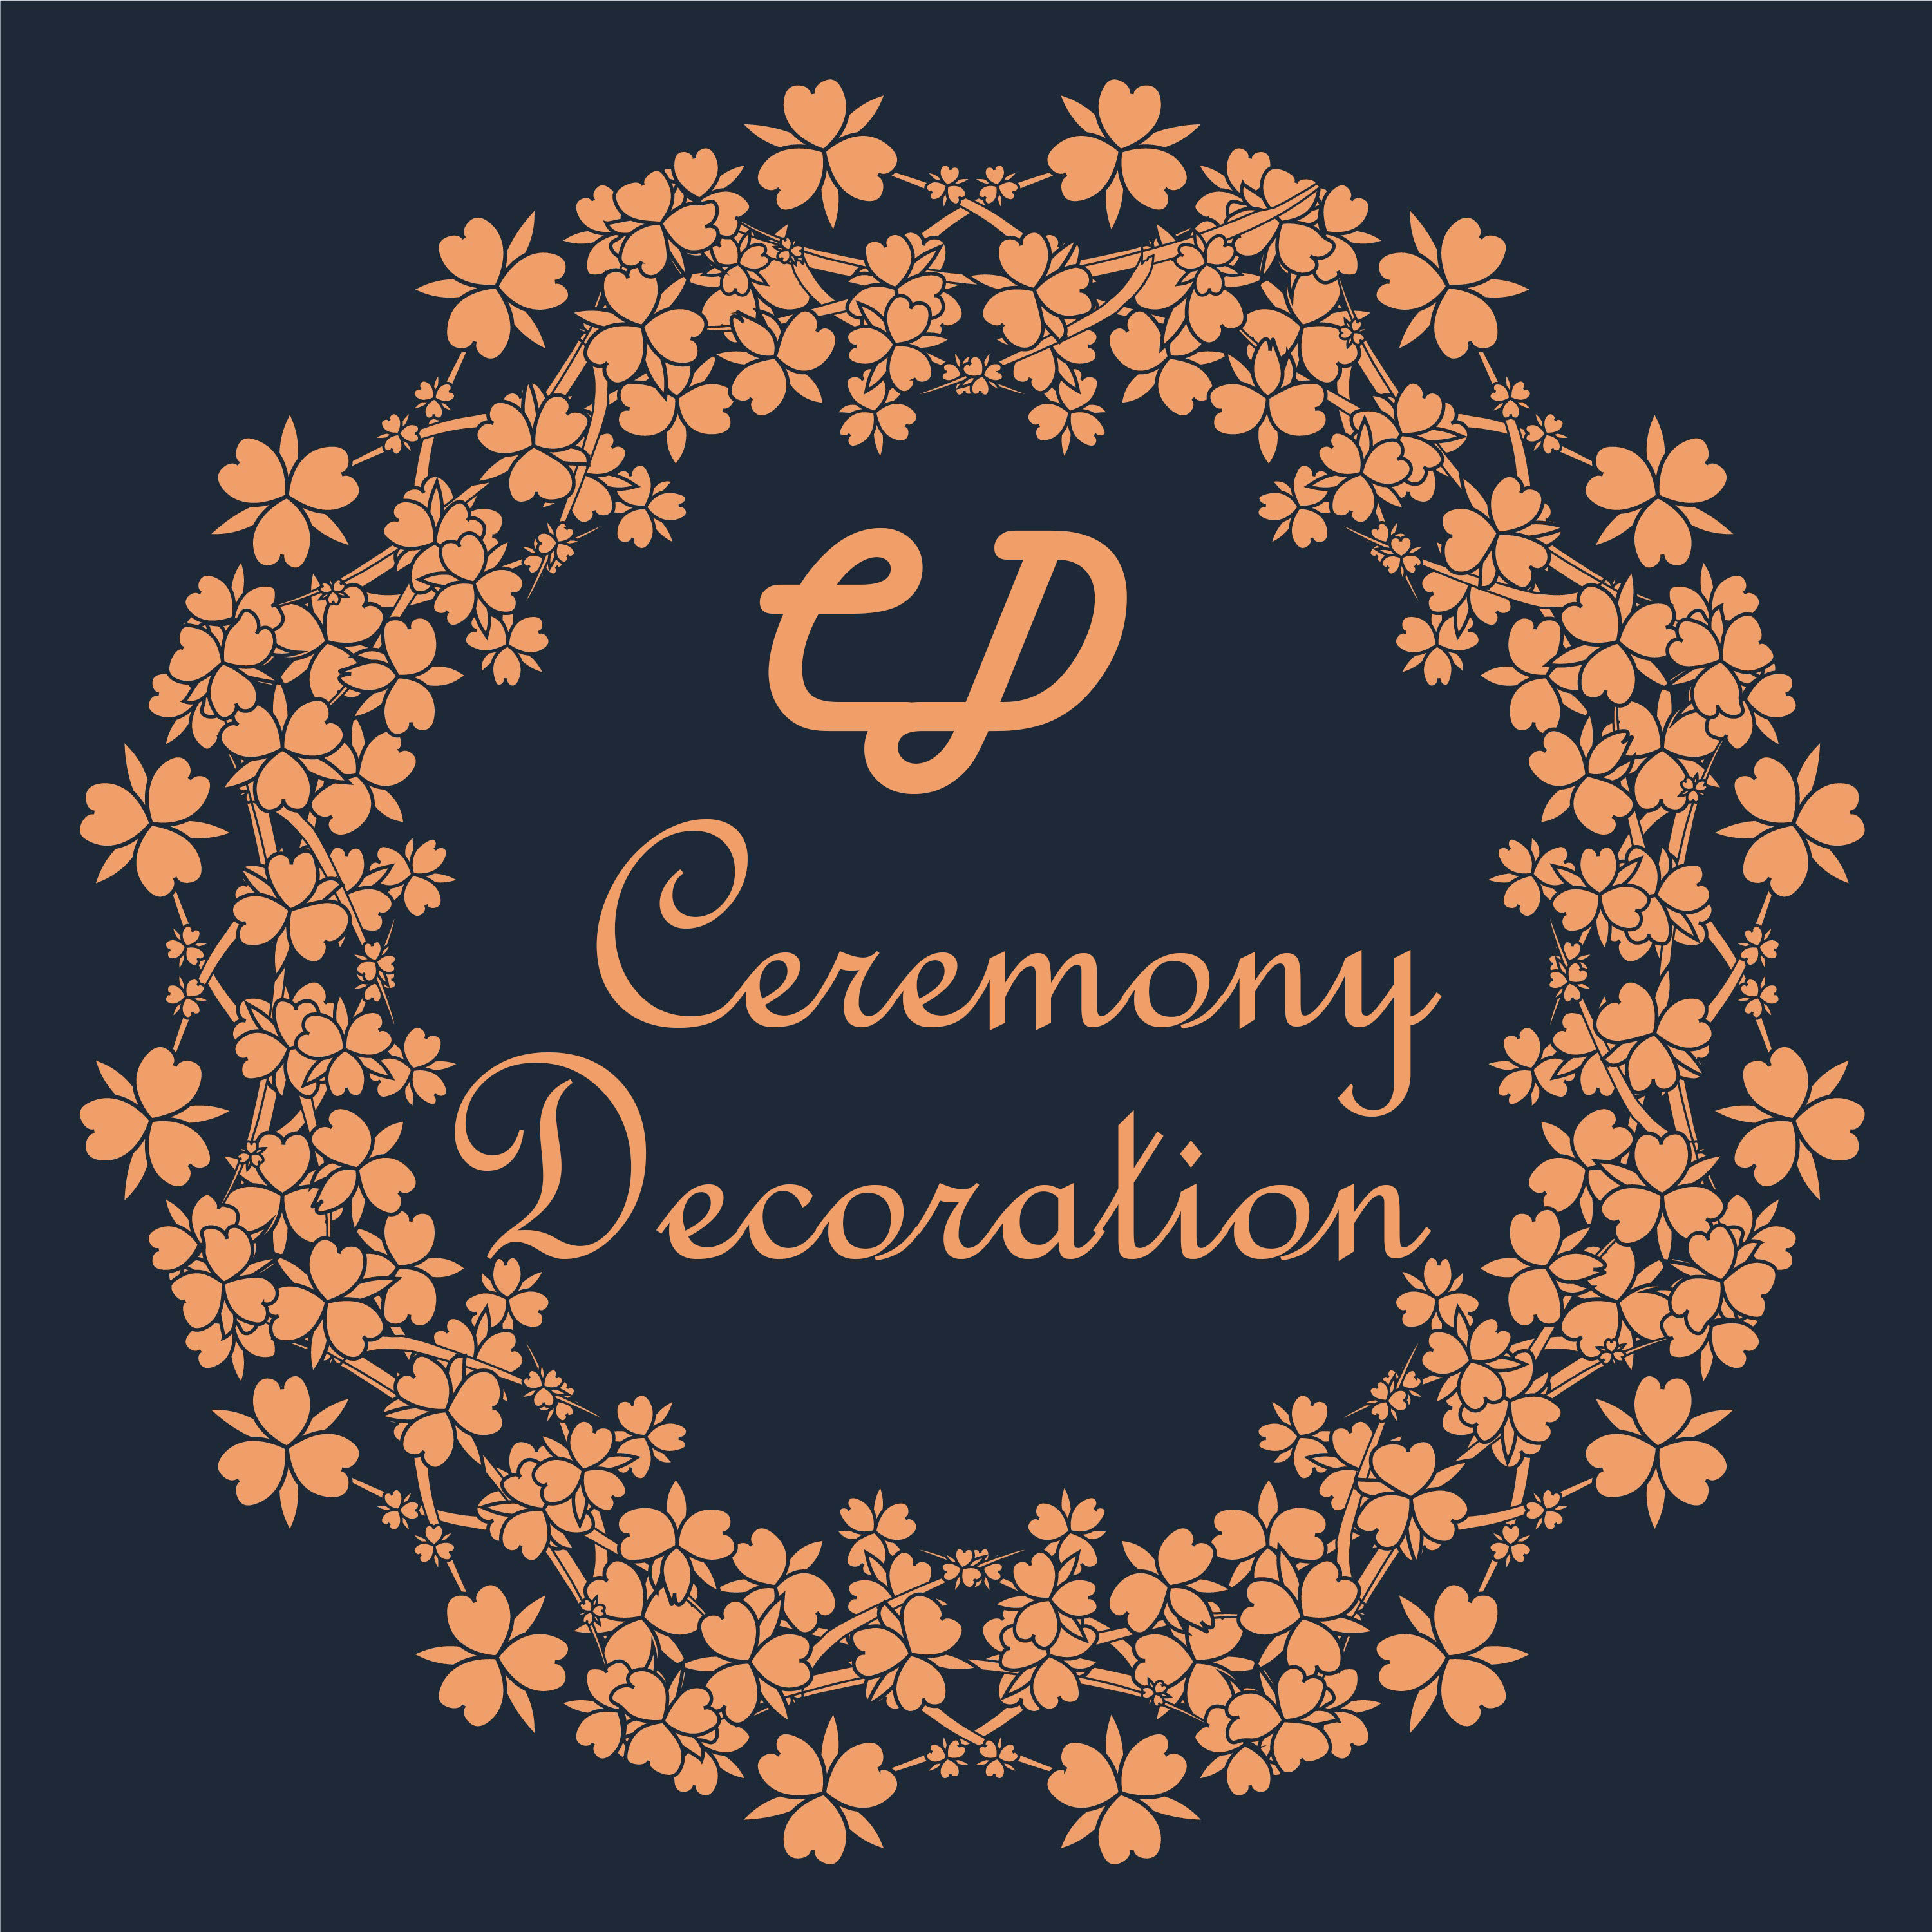 Ceremony Decoration